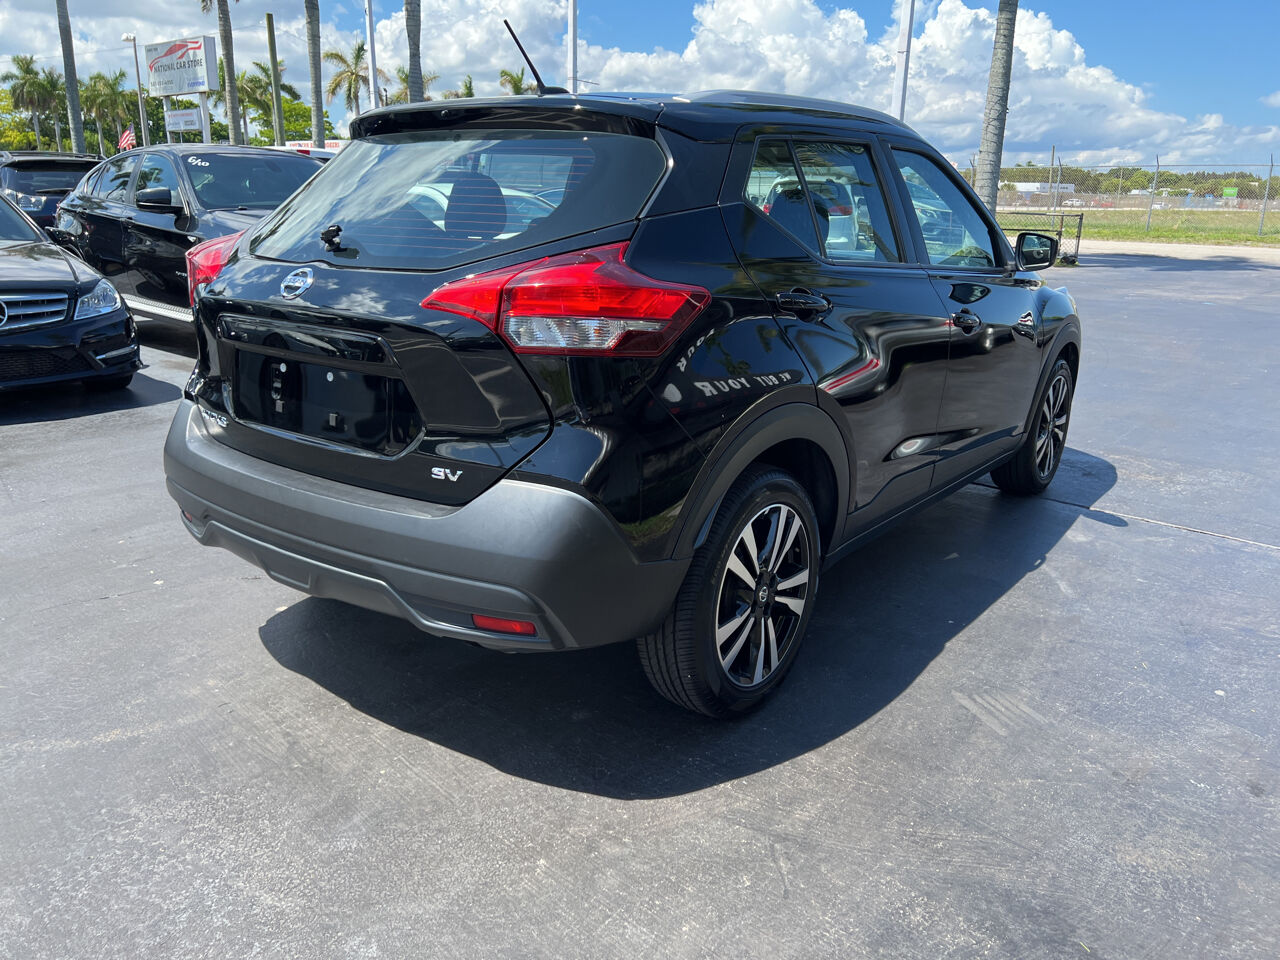 2019 Nissan Kicks Wagon - $16,900